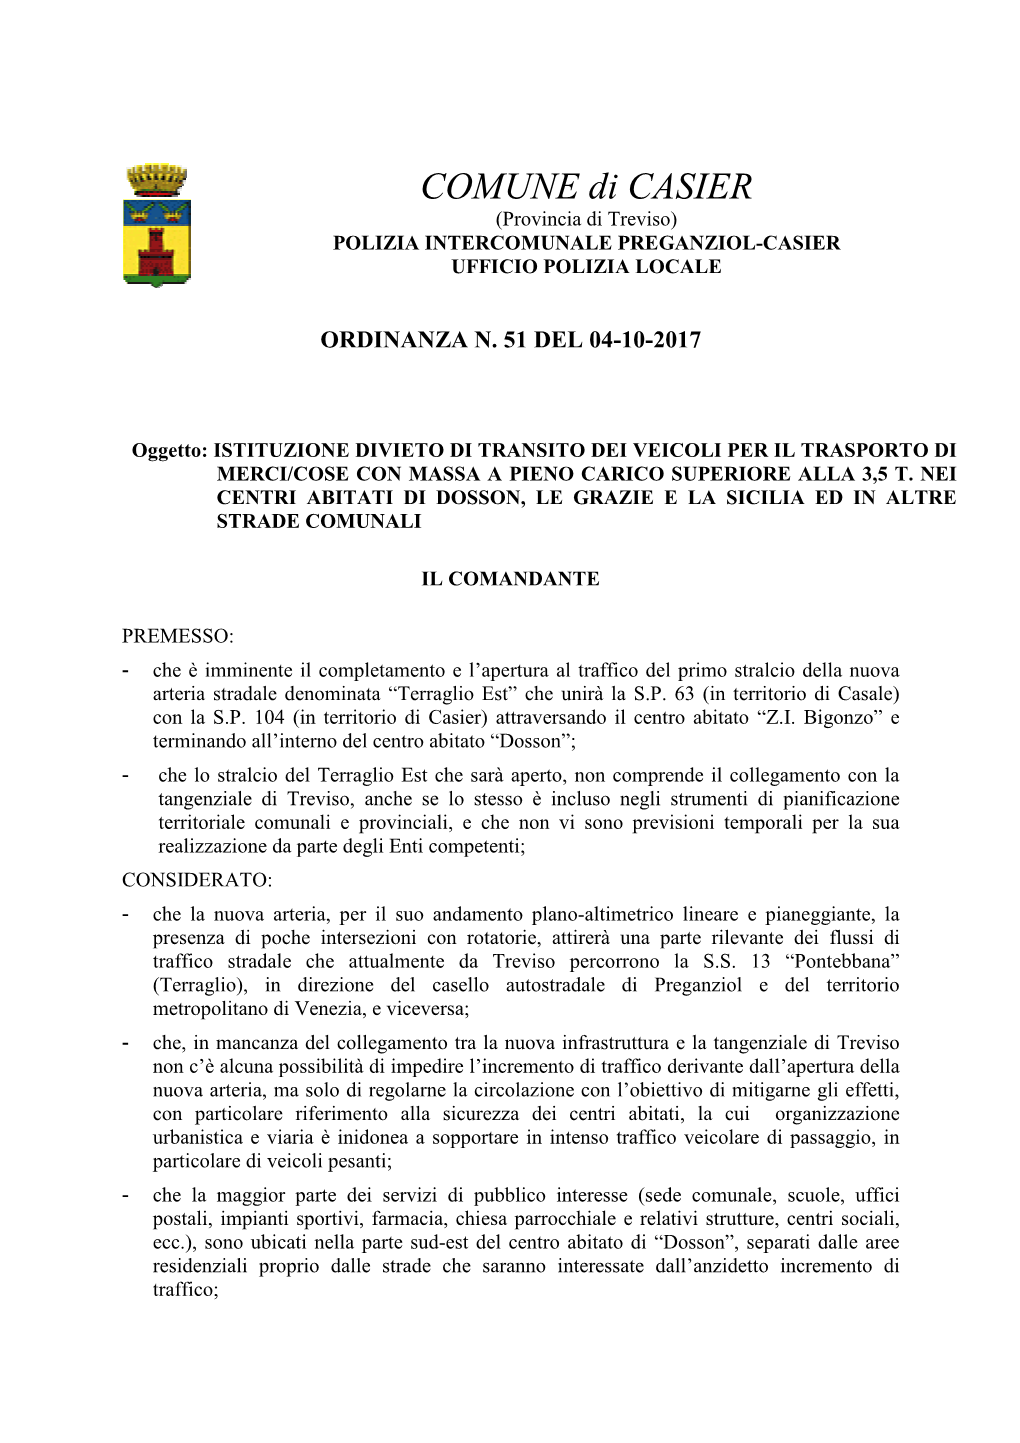 COMUNE Di CASIER (Provincia Di Treviso) POLIZIA INTERCOMUNALE PREGANZIOL-CASIER UFFICIO POLIZIA LOCALE